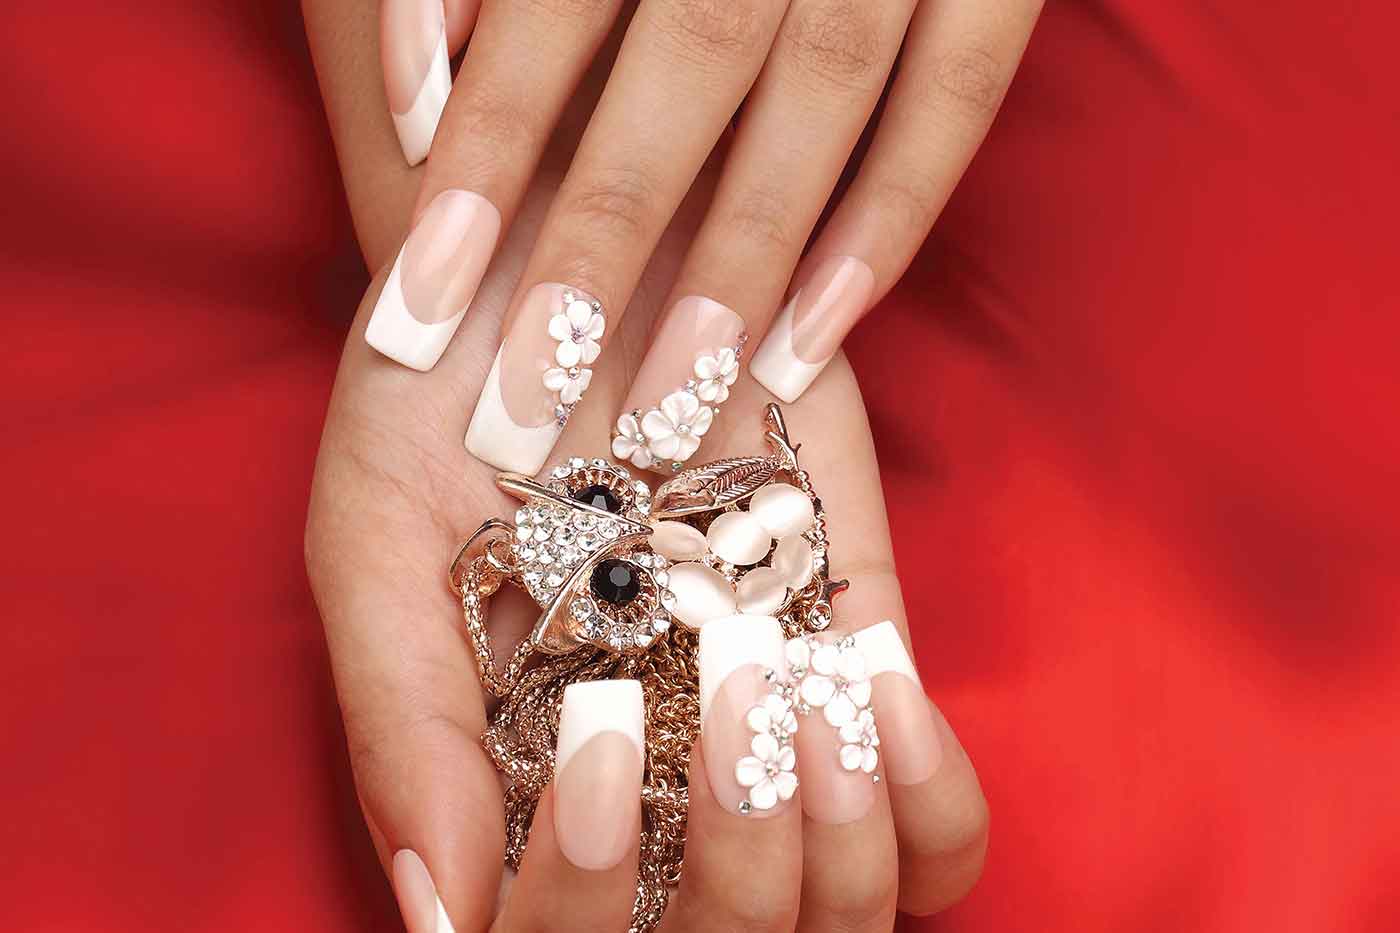 Maroon & gold wedding nails | Bridal nail art designs | Bridal nails designs,  Bridal nail art, Gold nails wedding